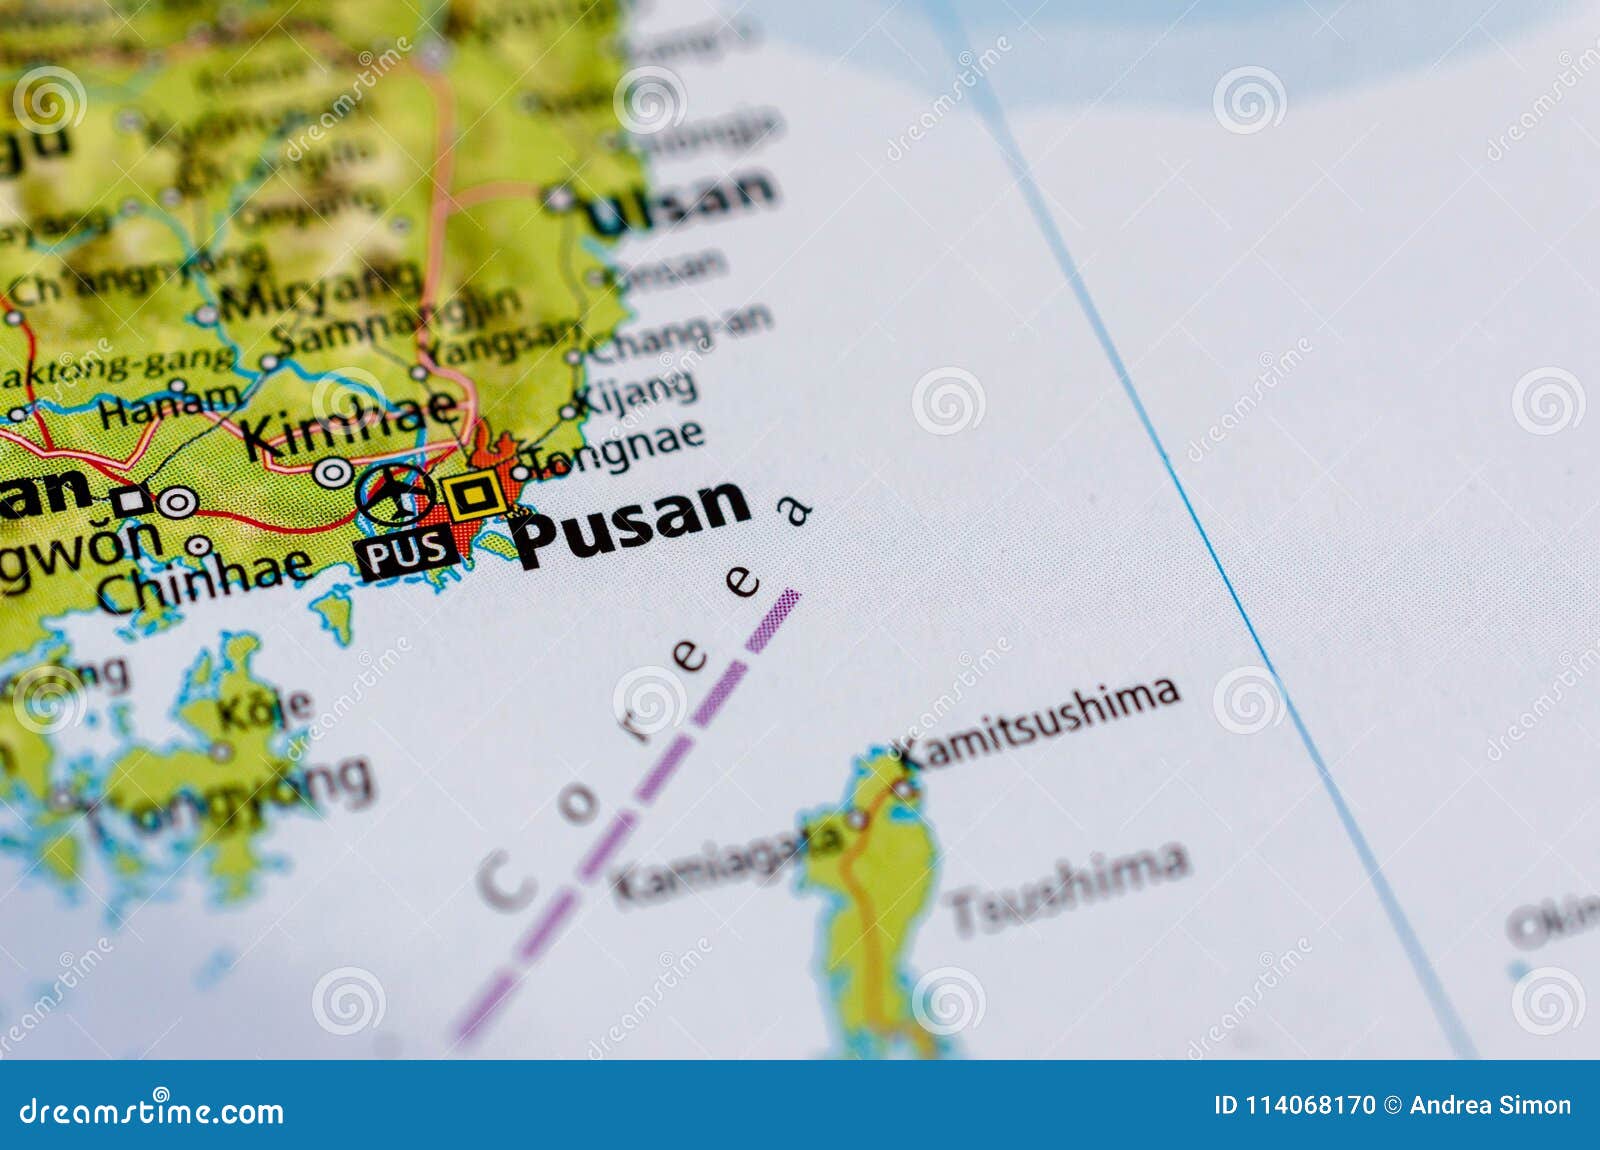 Busan Travel Map